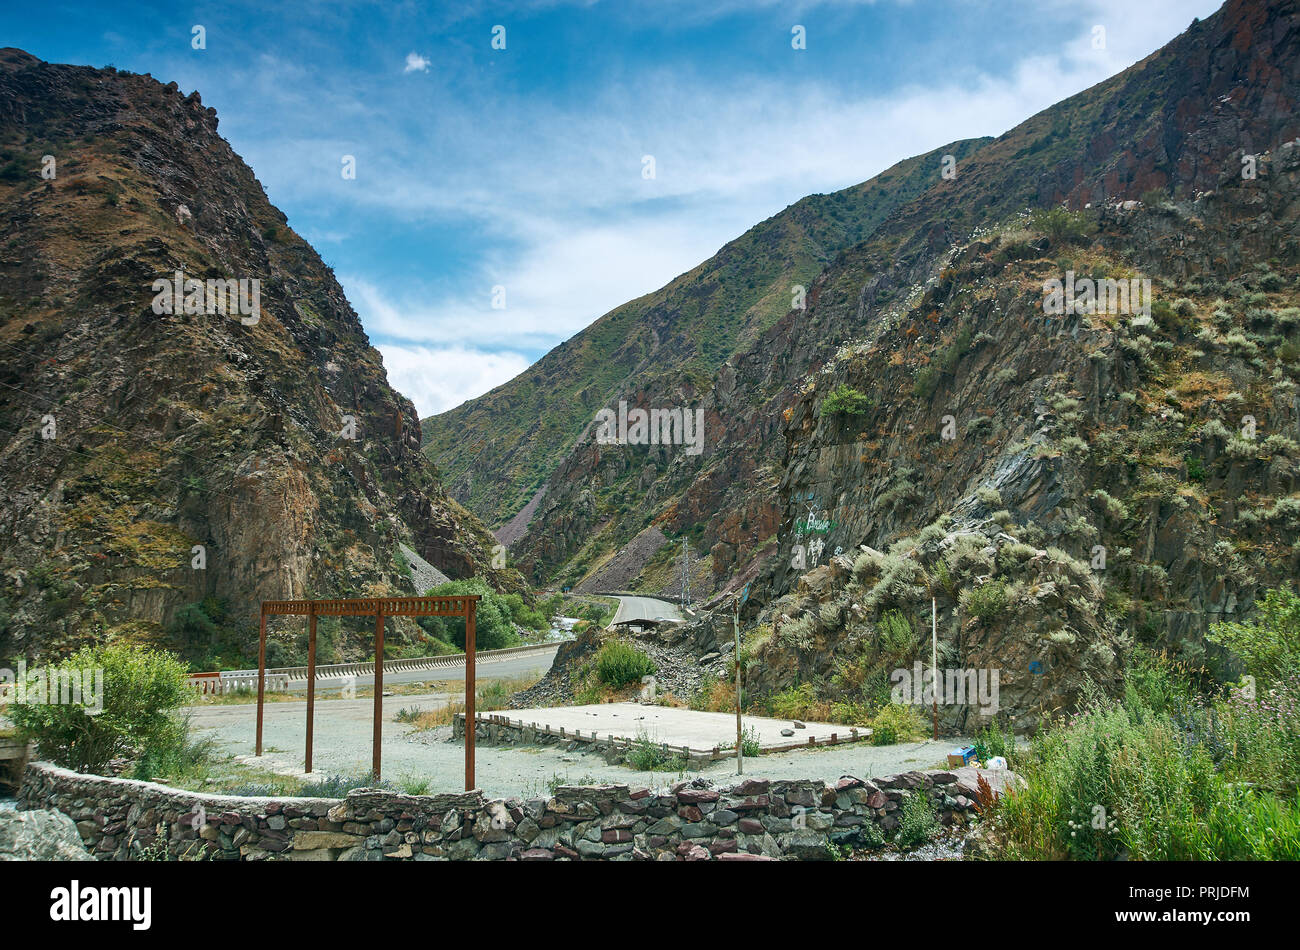 Gorge Kara balta , route from Bishkek to Osh. Kyrgyzstan Stock Photo - Alamy